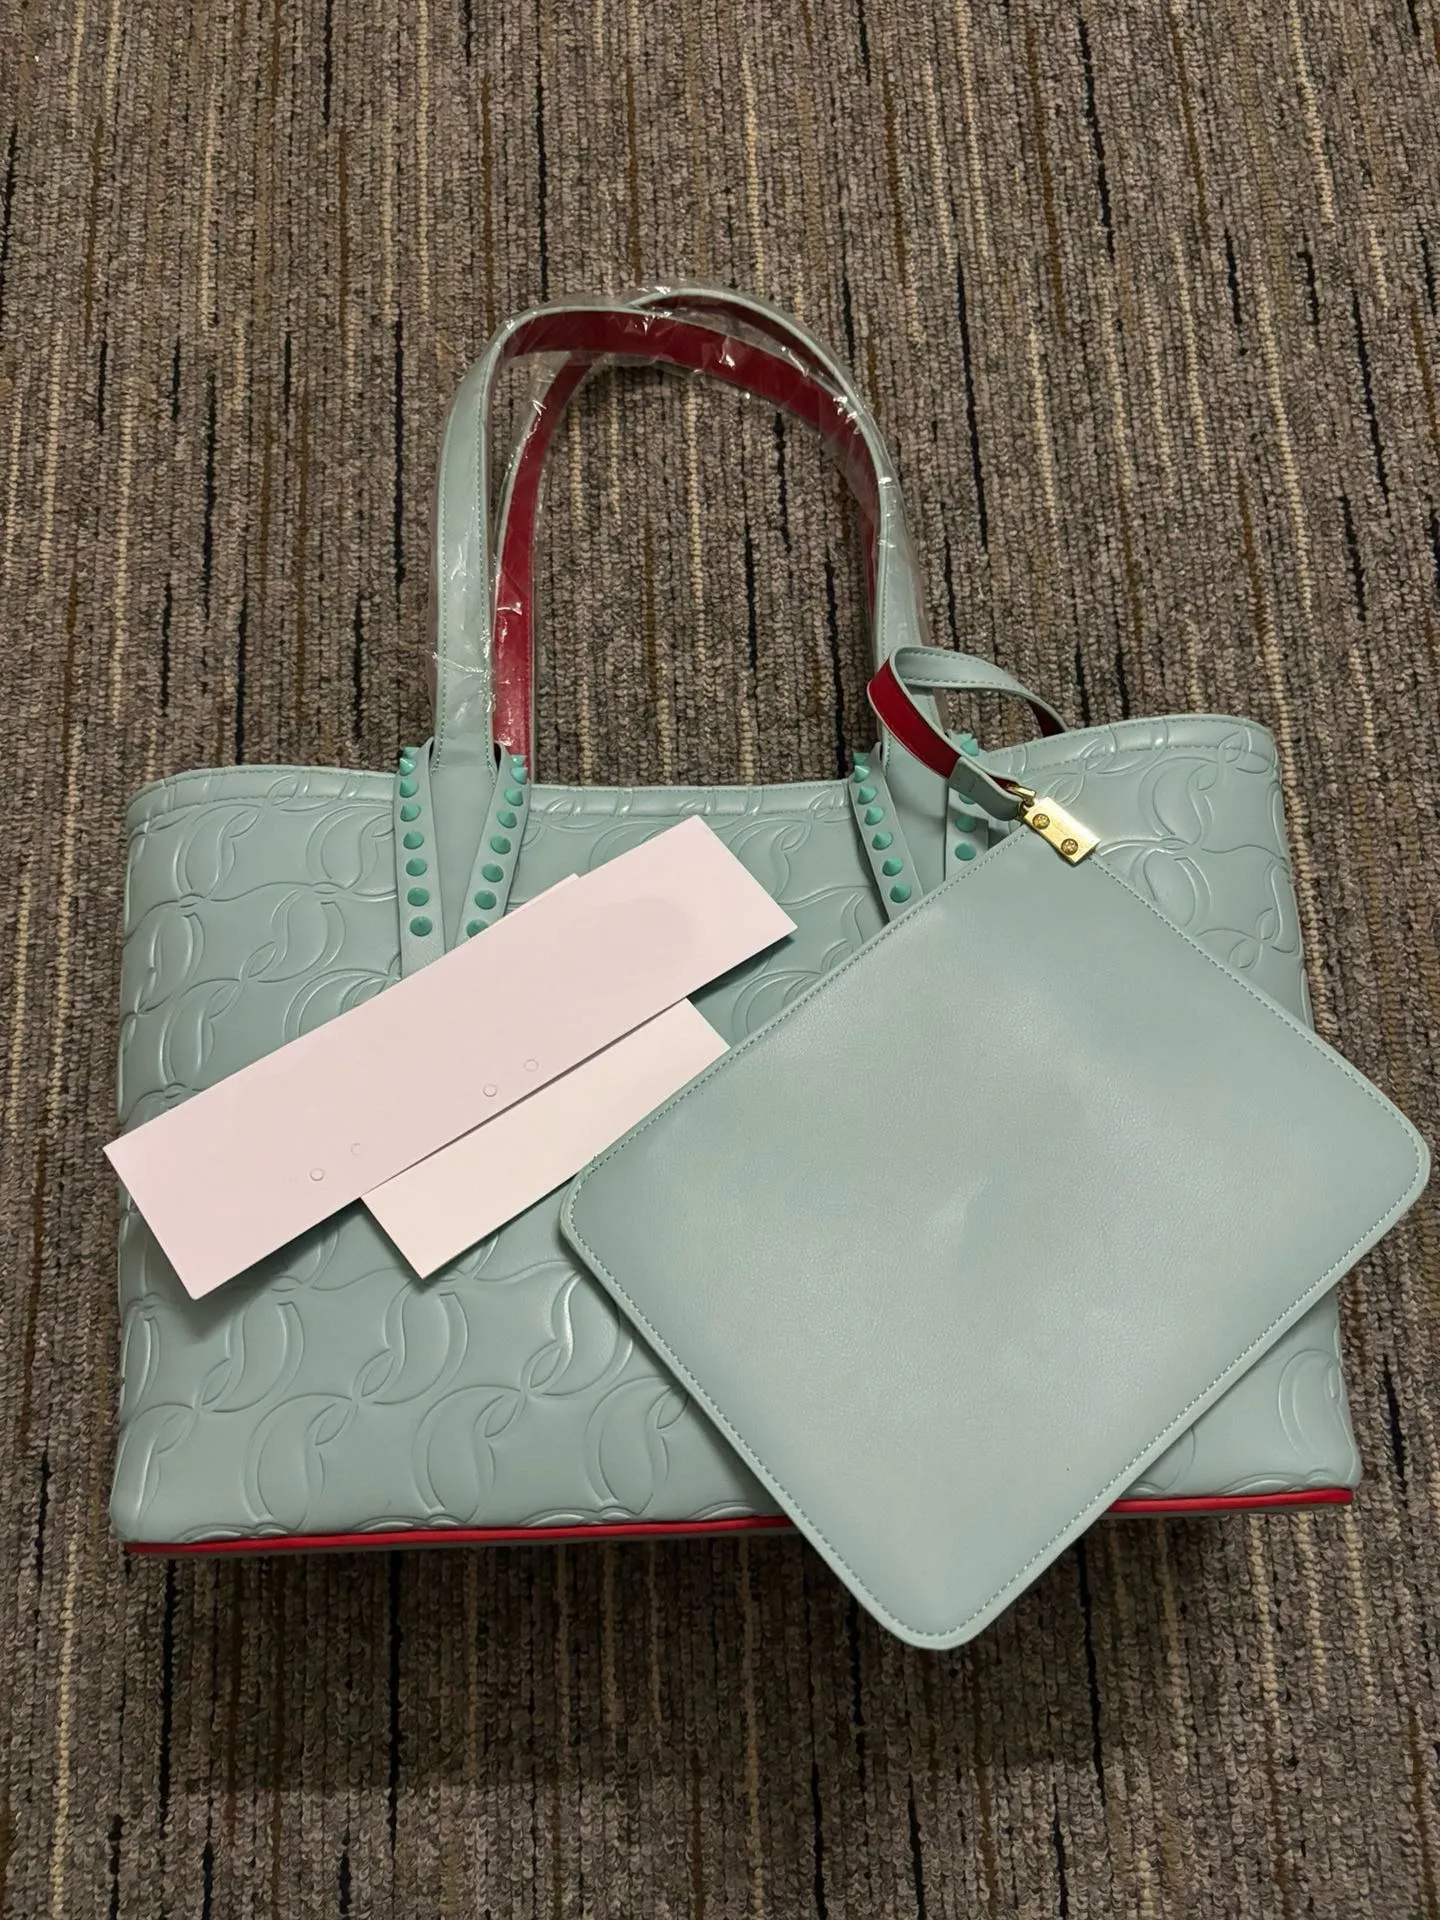 新しいクラシック最高品質のトートバッグレザー防水大型ショッピングバッグファッションデザイナーショルダーバッグ女性の財布と女の子のパーティーバッグの財布